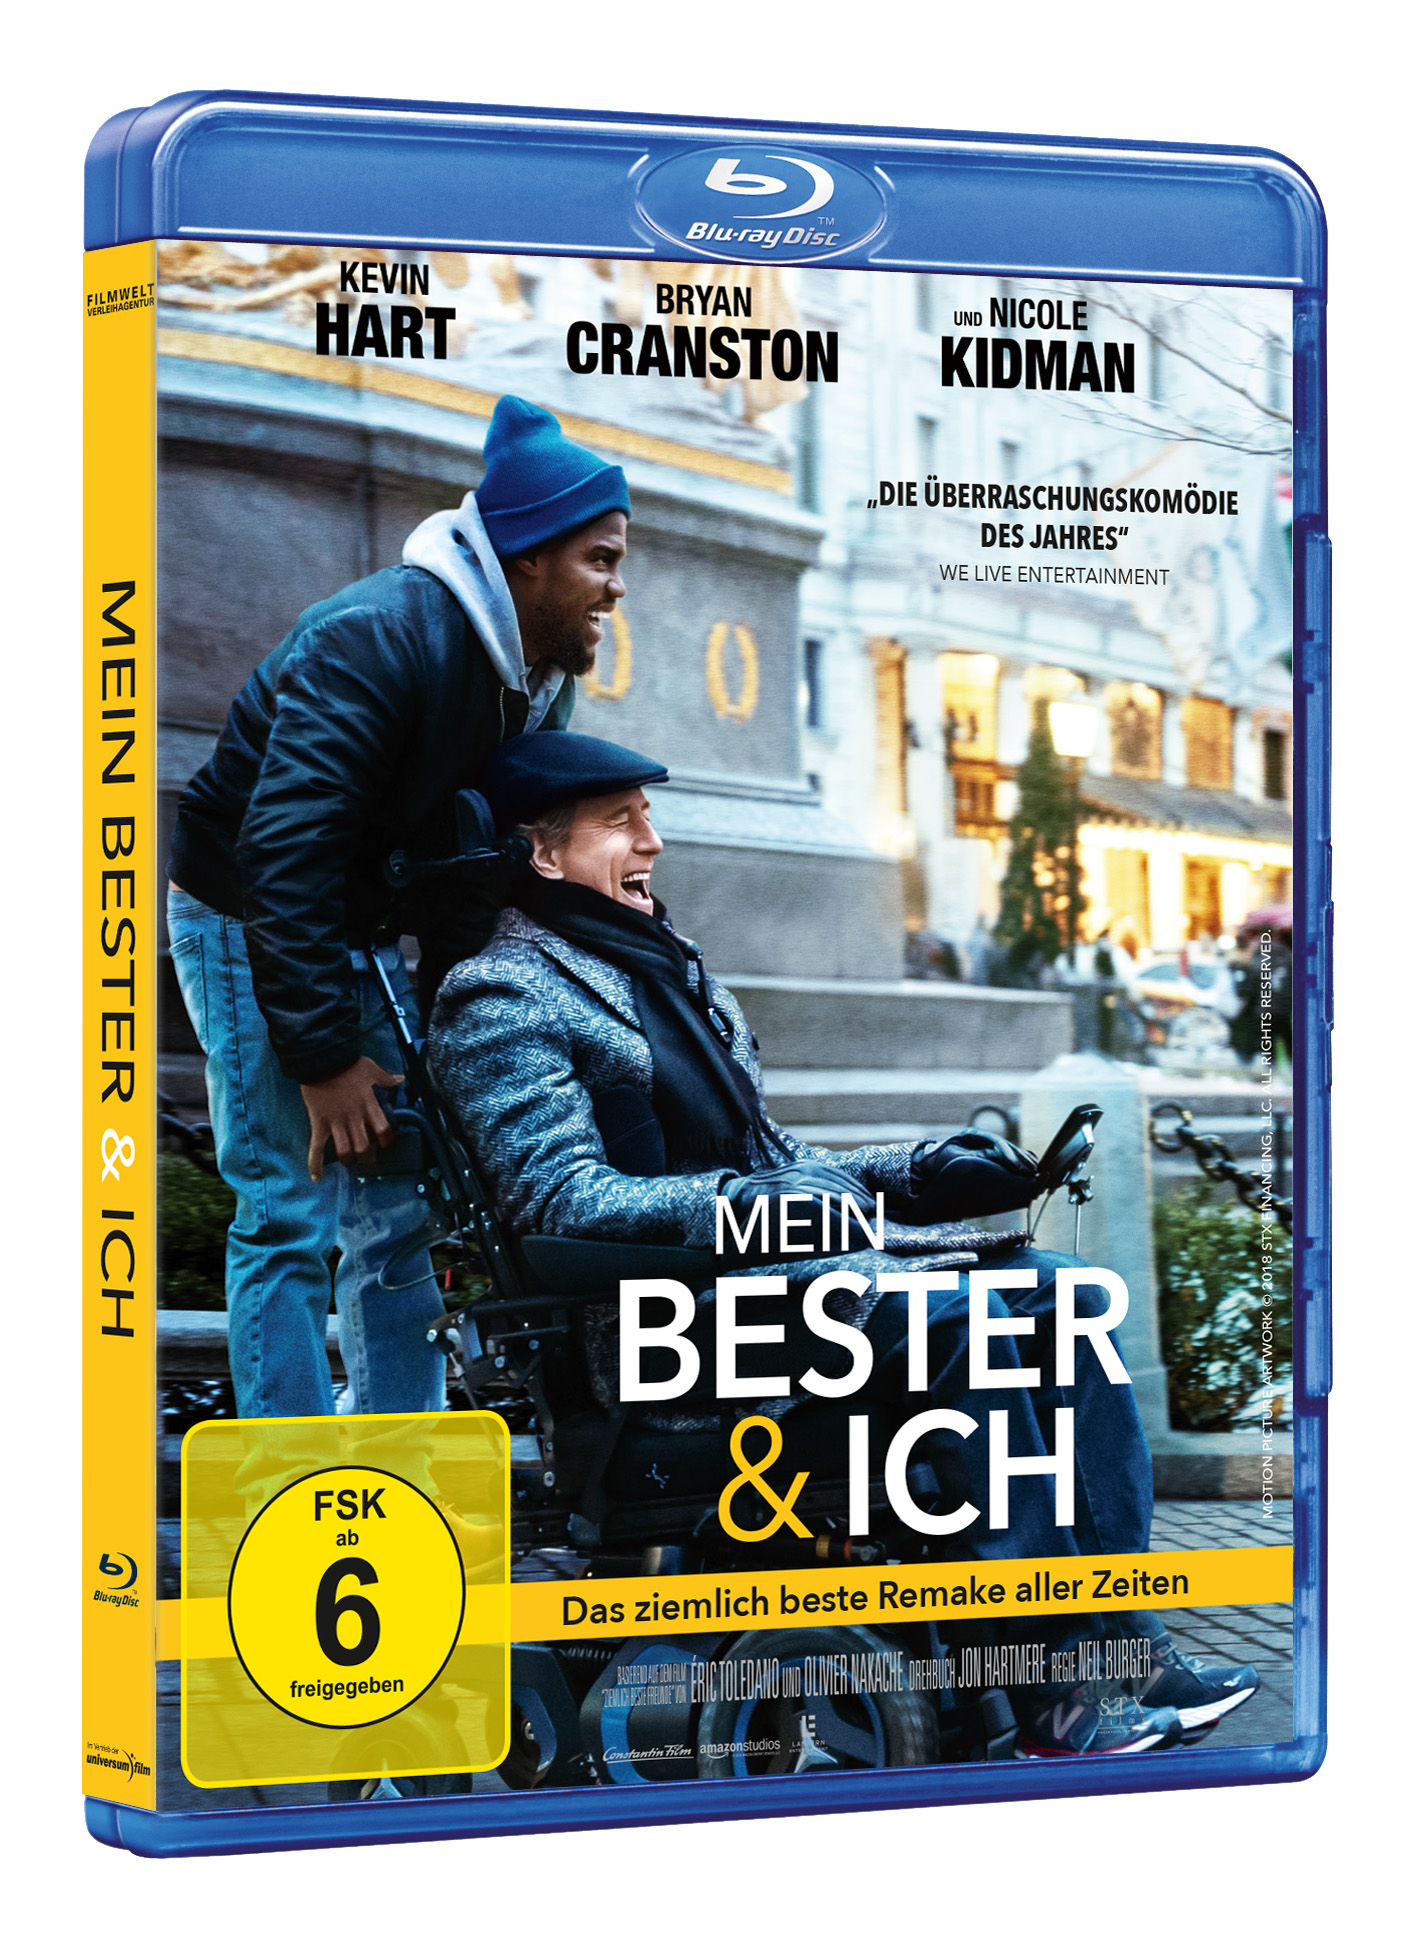 Ich Blu-ray & Bester Mein